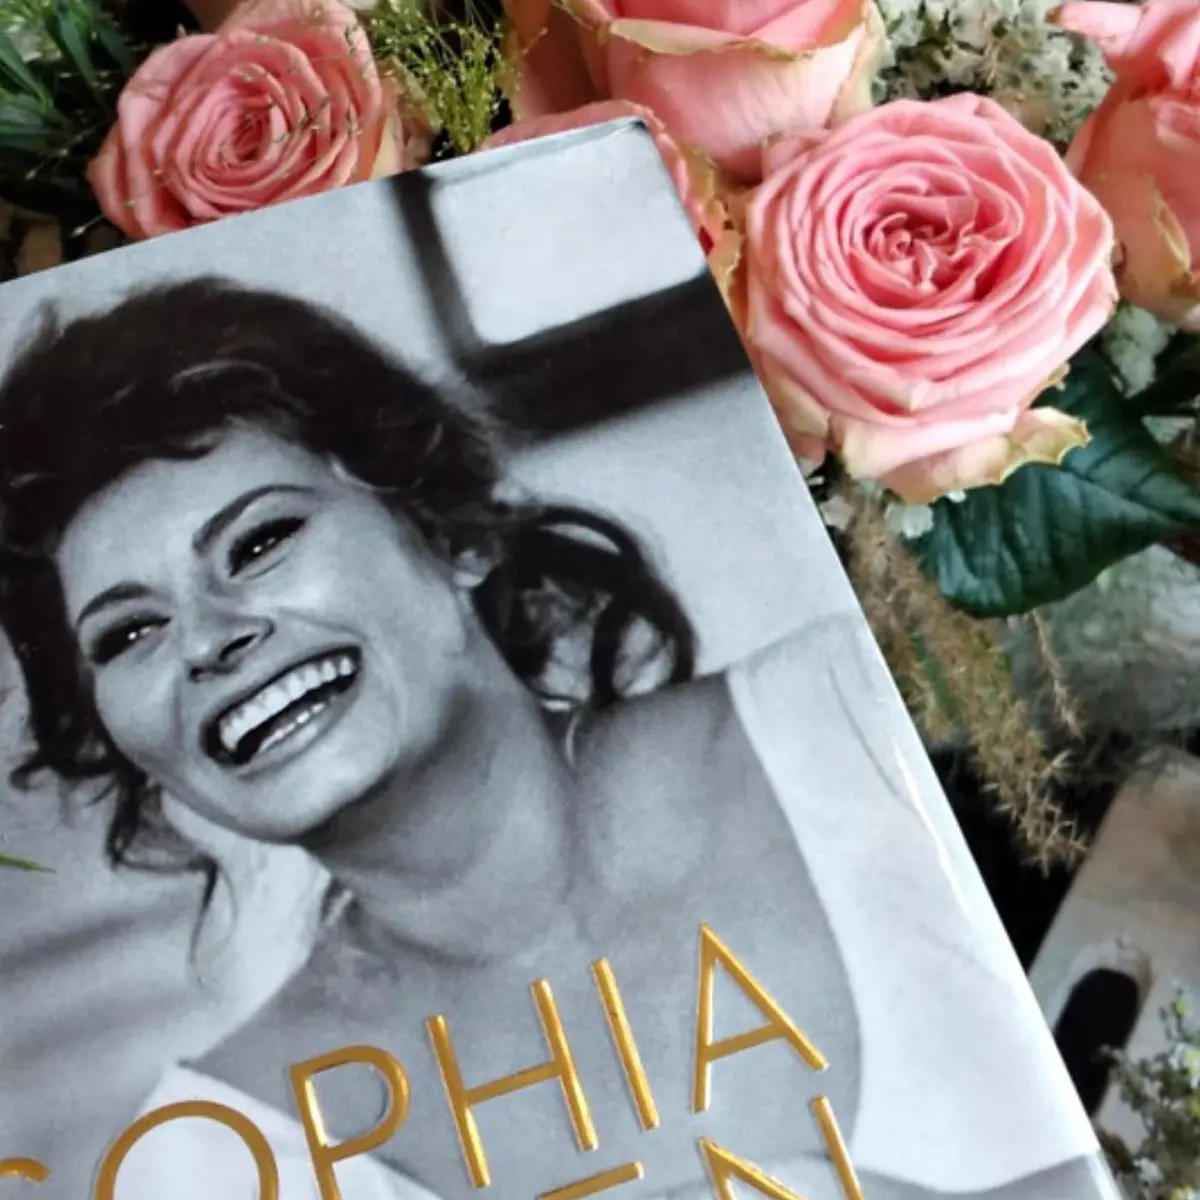 Jan Spek Rozen Rose Sophia Loren feature on Thursd